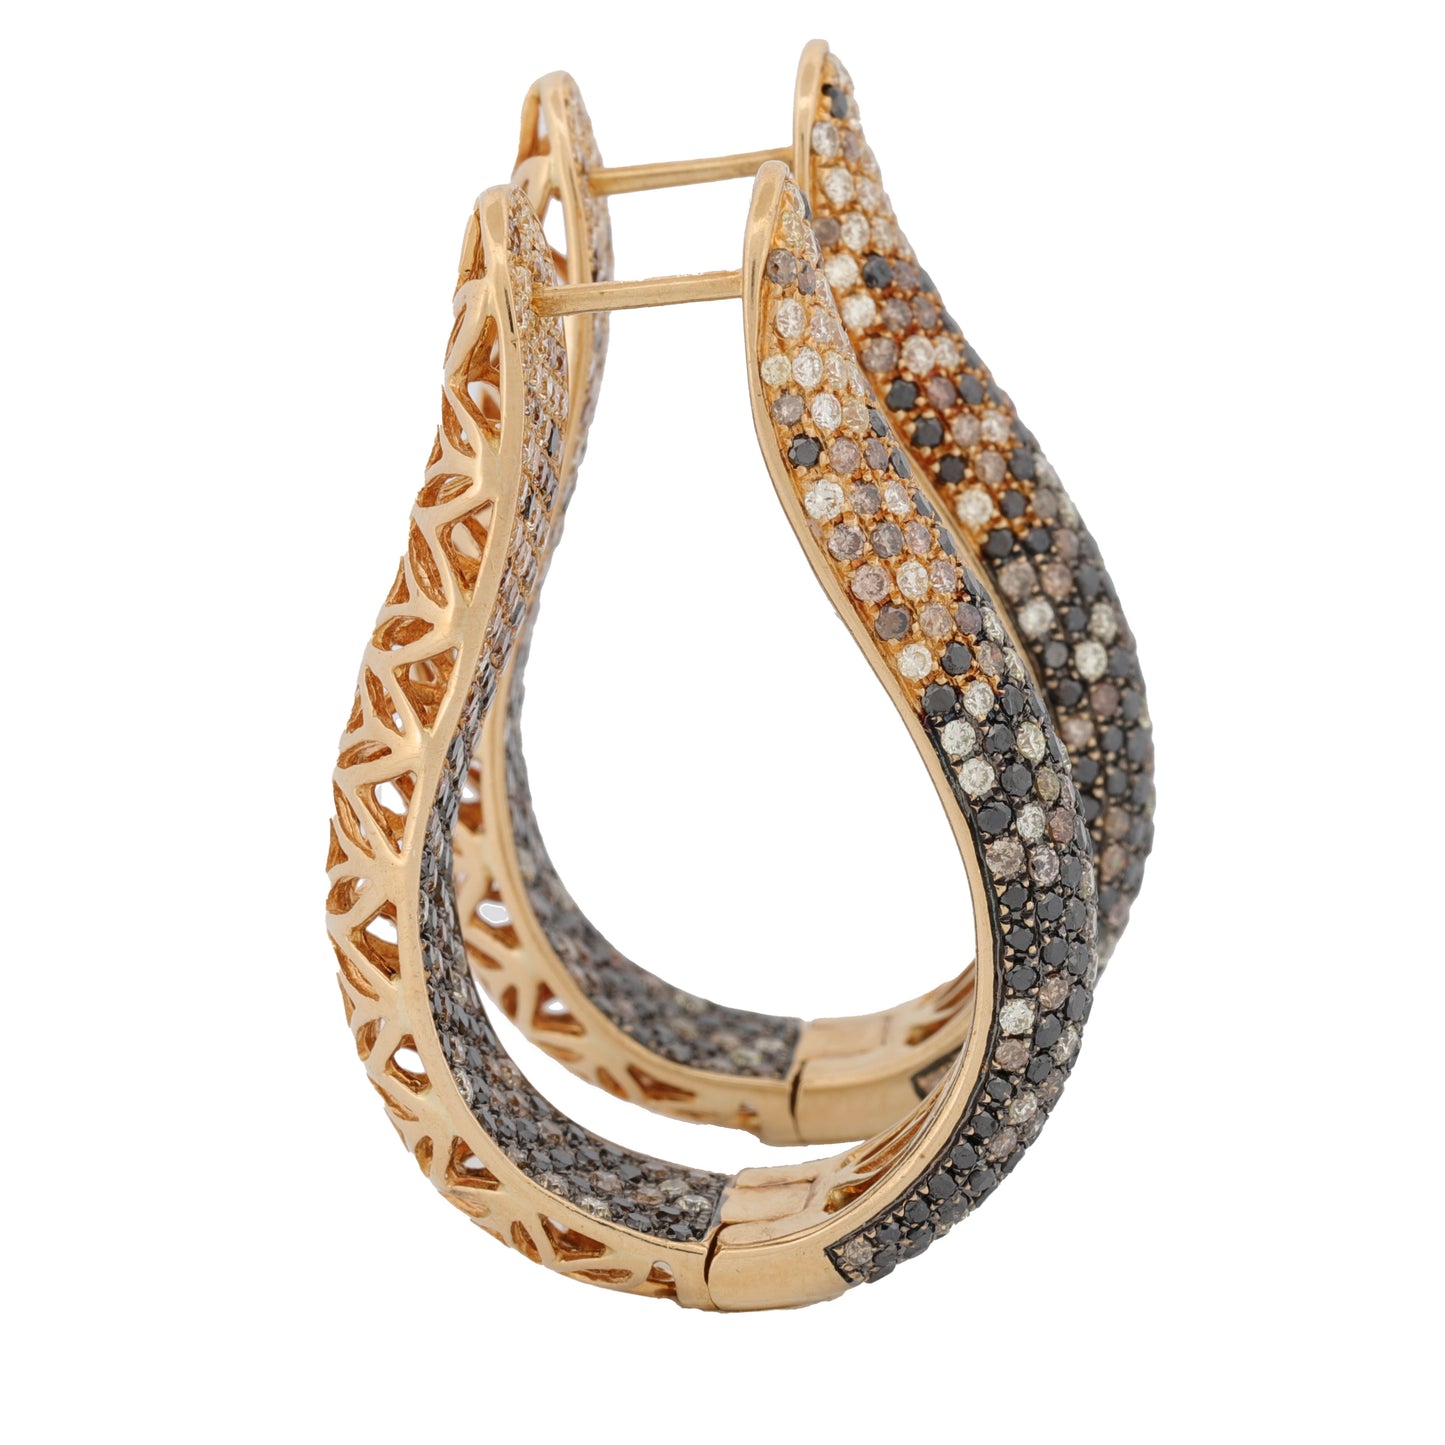 LTJ Inside-Out Fancy Color Diamond Hoop Earrings in 18k Yellow Gold